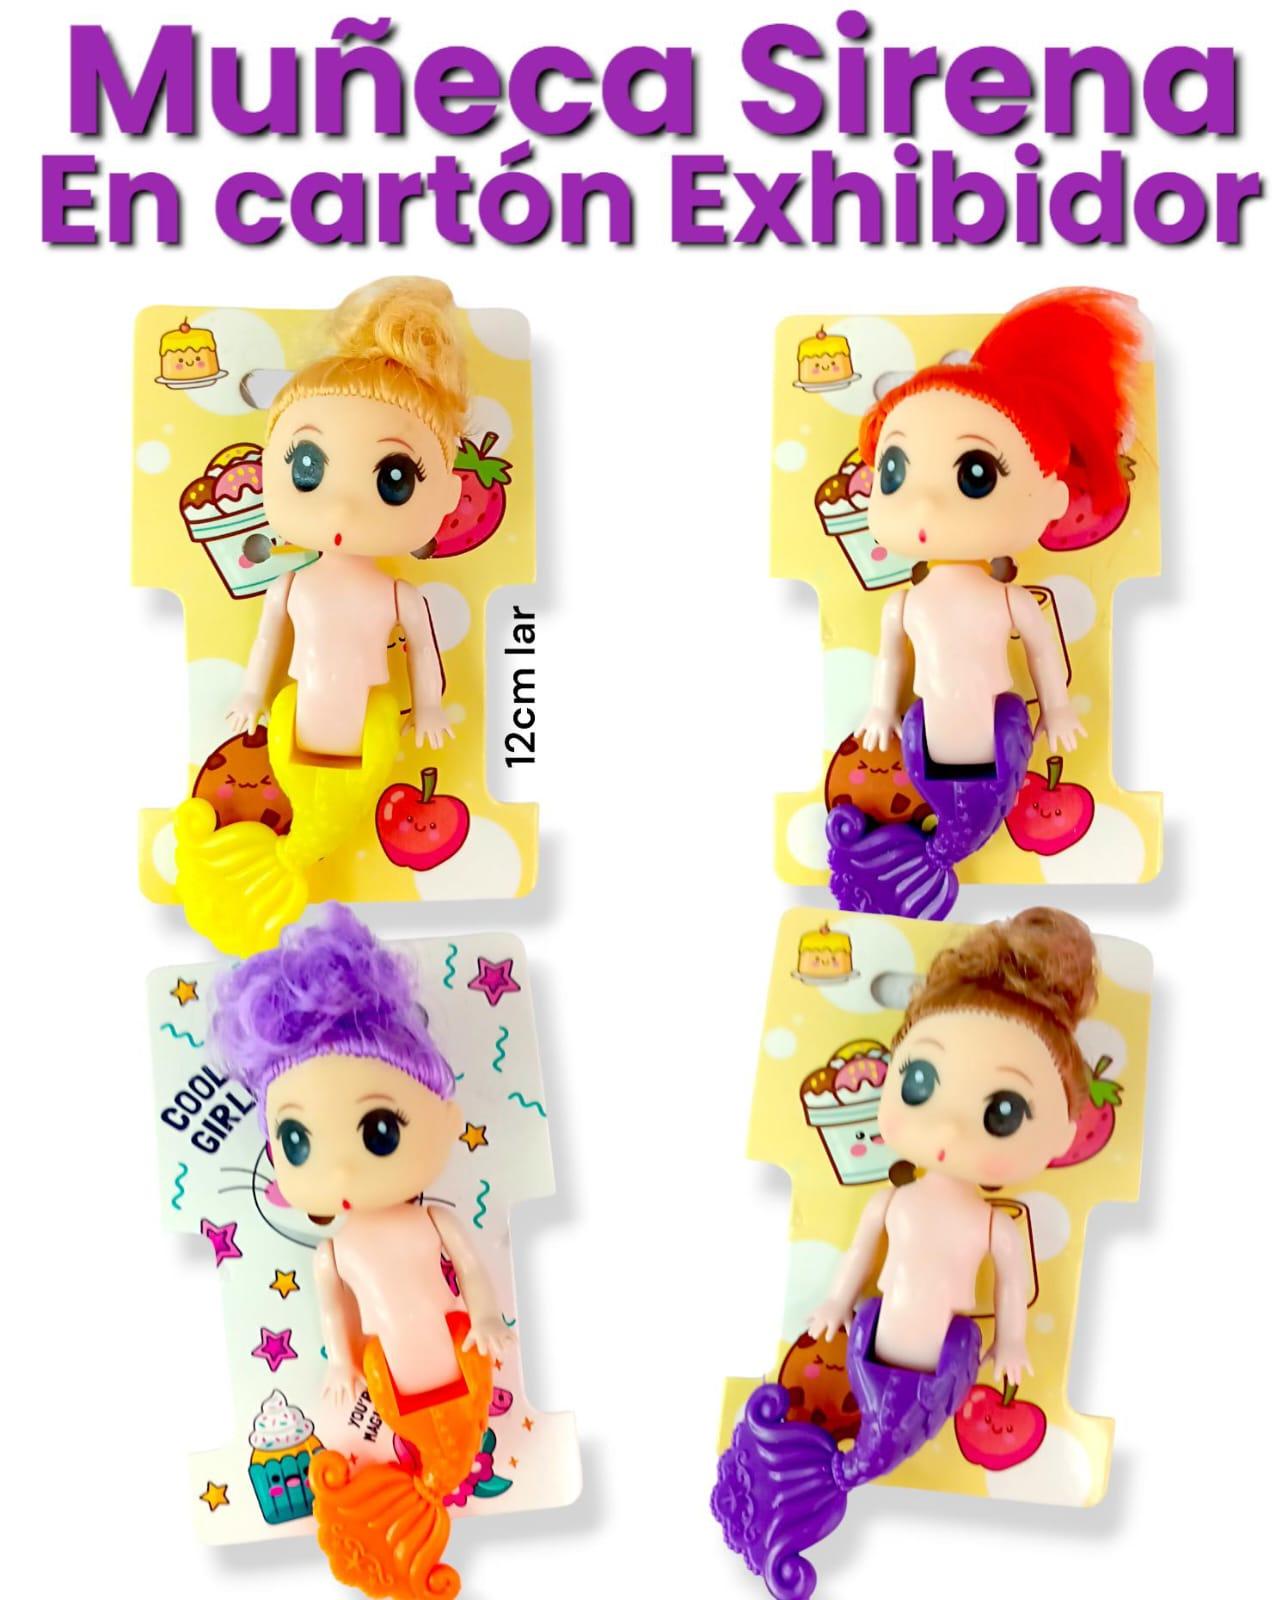 Muñeca Sirena en Carton Exhibidor